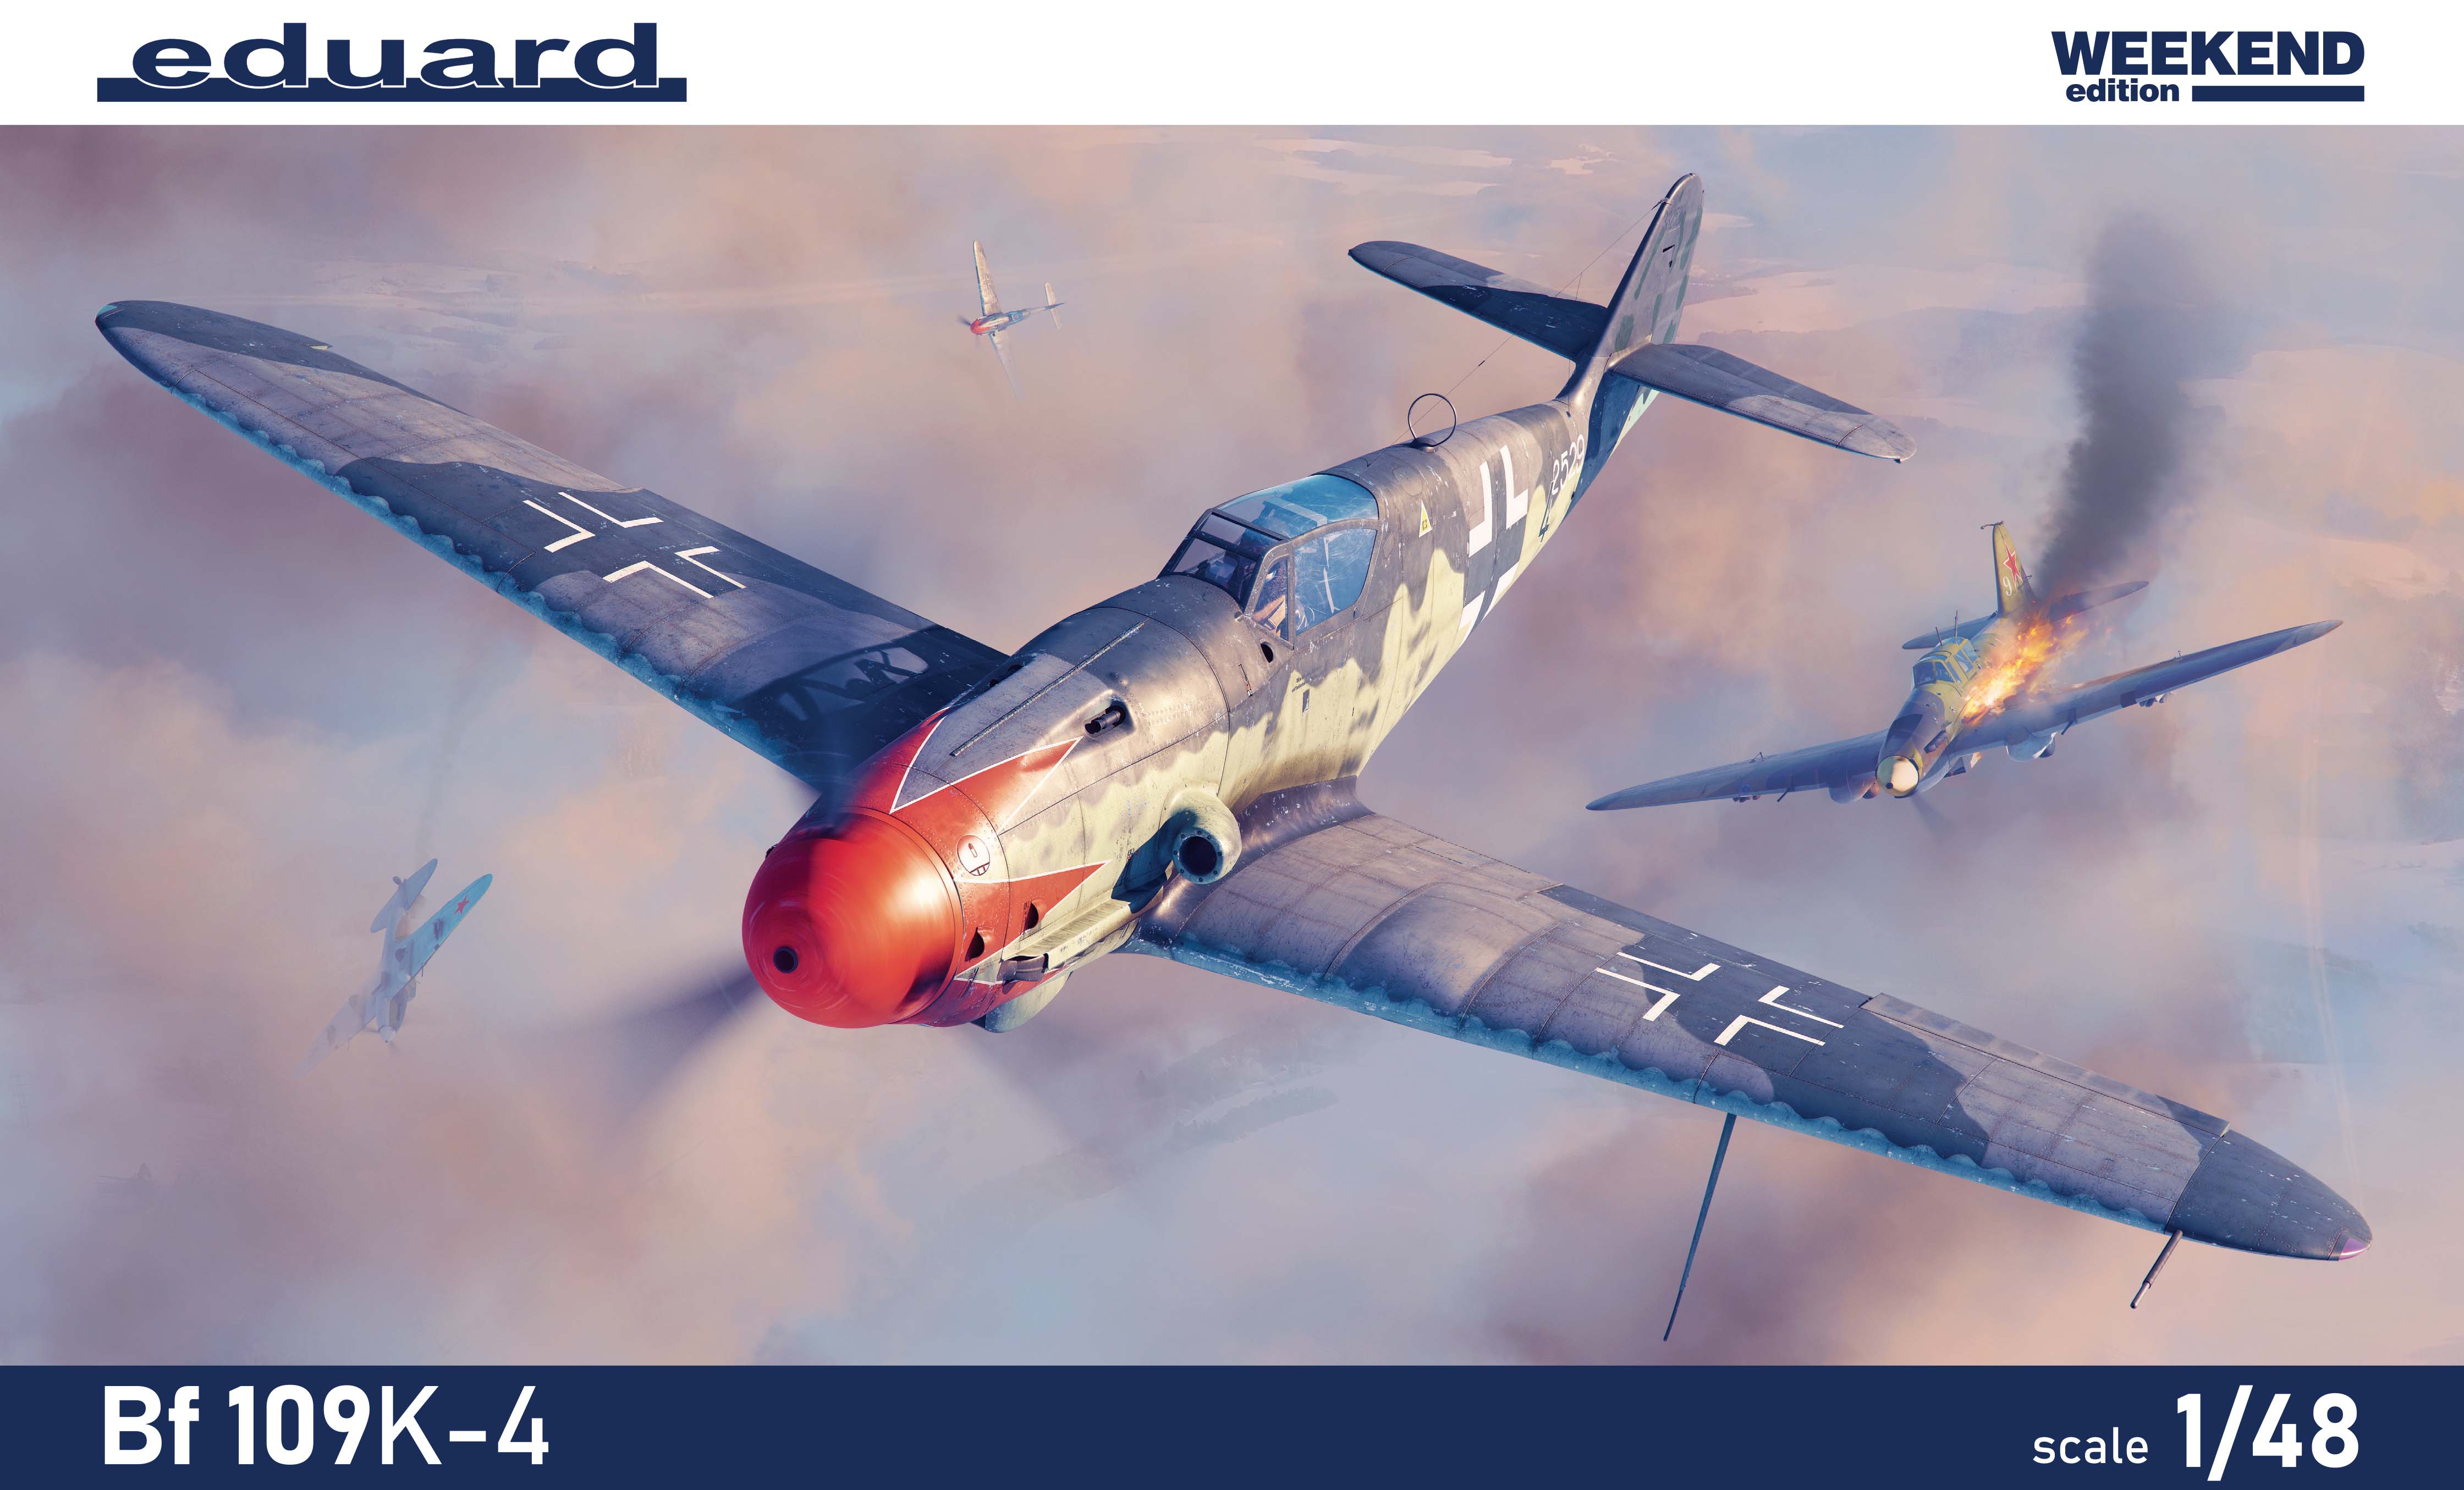 Сборная модель 1/48 Messerschmitt Bf-109K-4 The Weekend edition (Eduard kits)